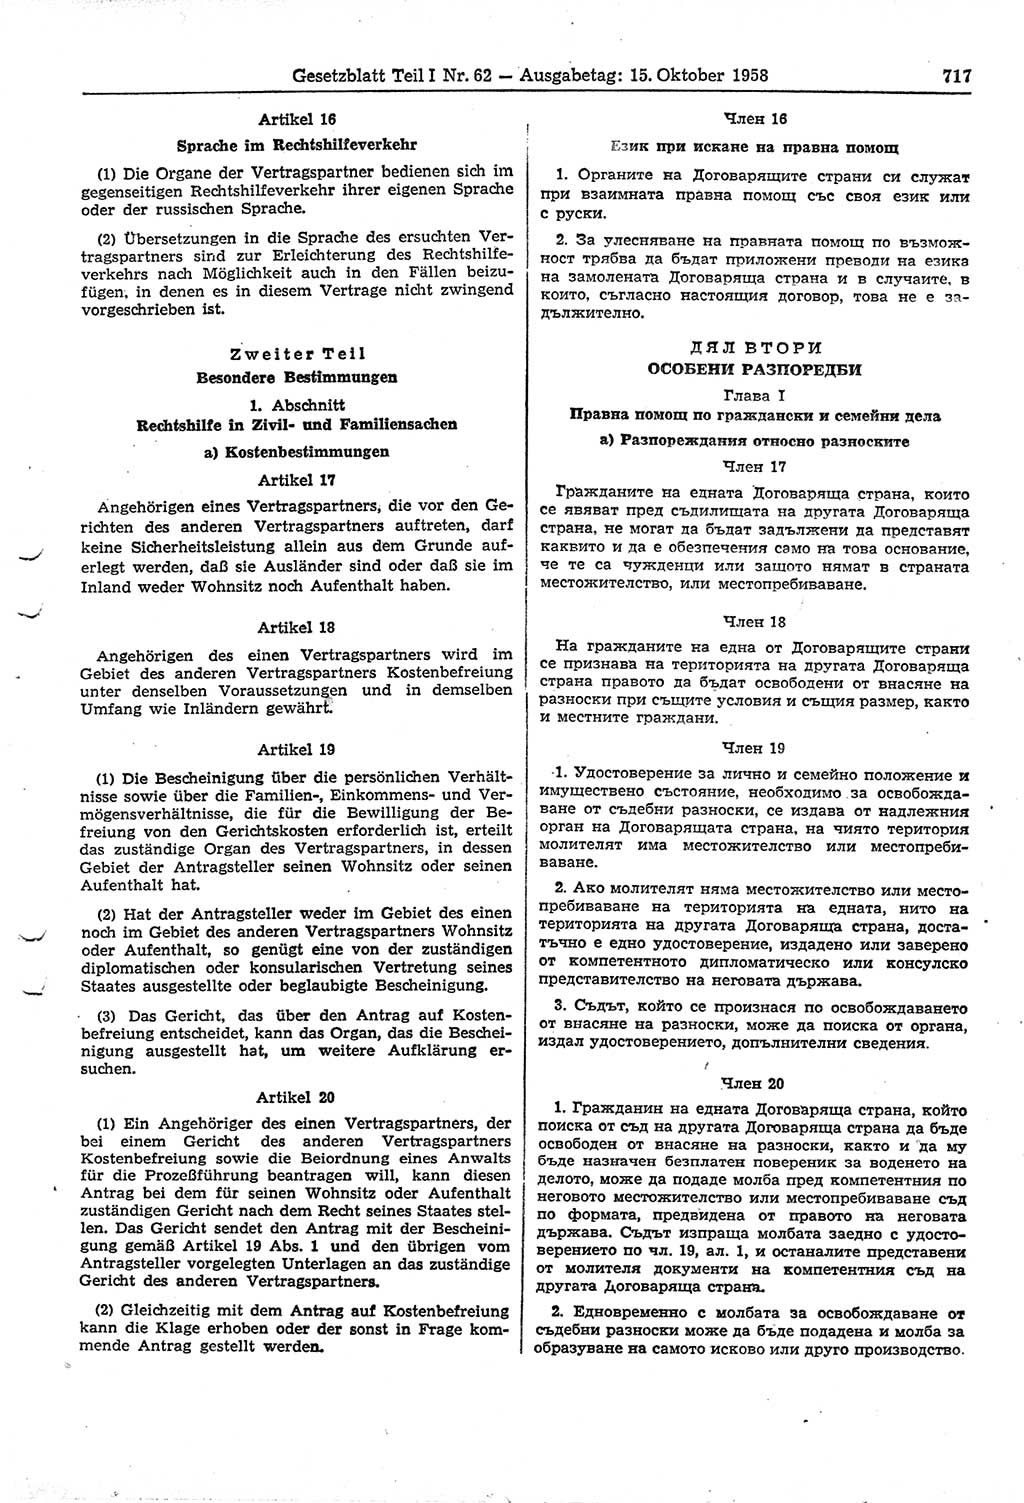 Gesetzblatt (GBl.) der Deutschen Demokratischen Republik (DDR) Teil Ⅰ 1958, Seite 717 (GBl. DDR Ⅰ 1958, S. 717)